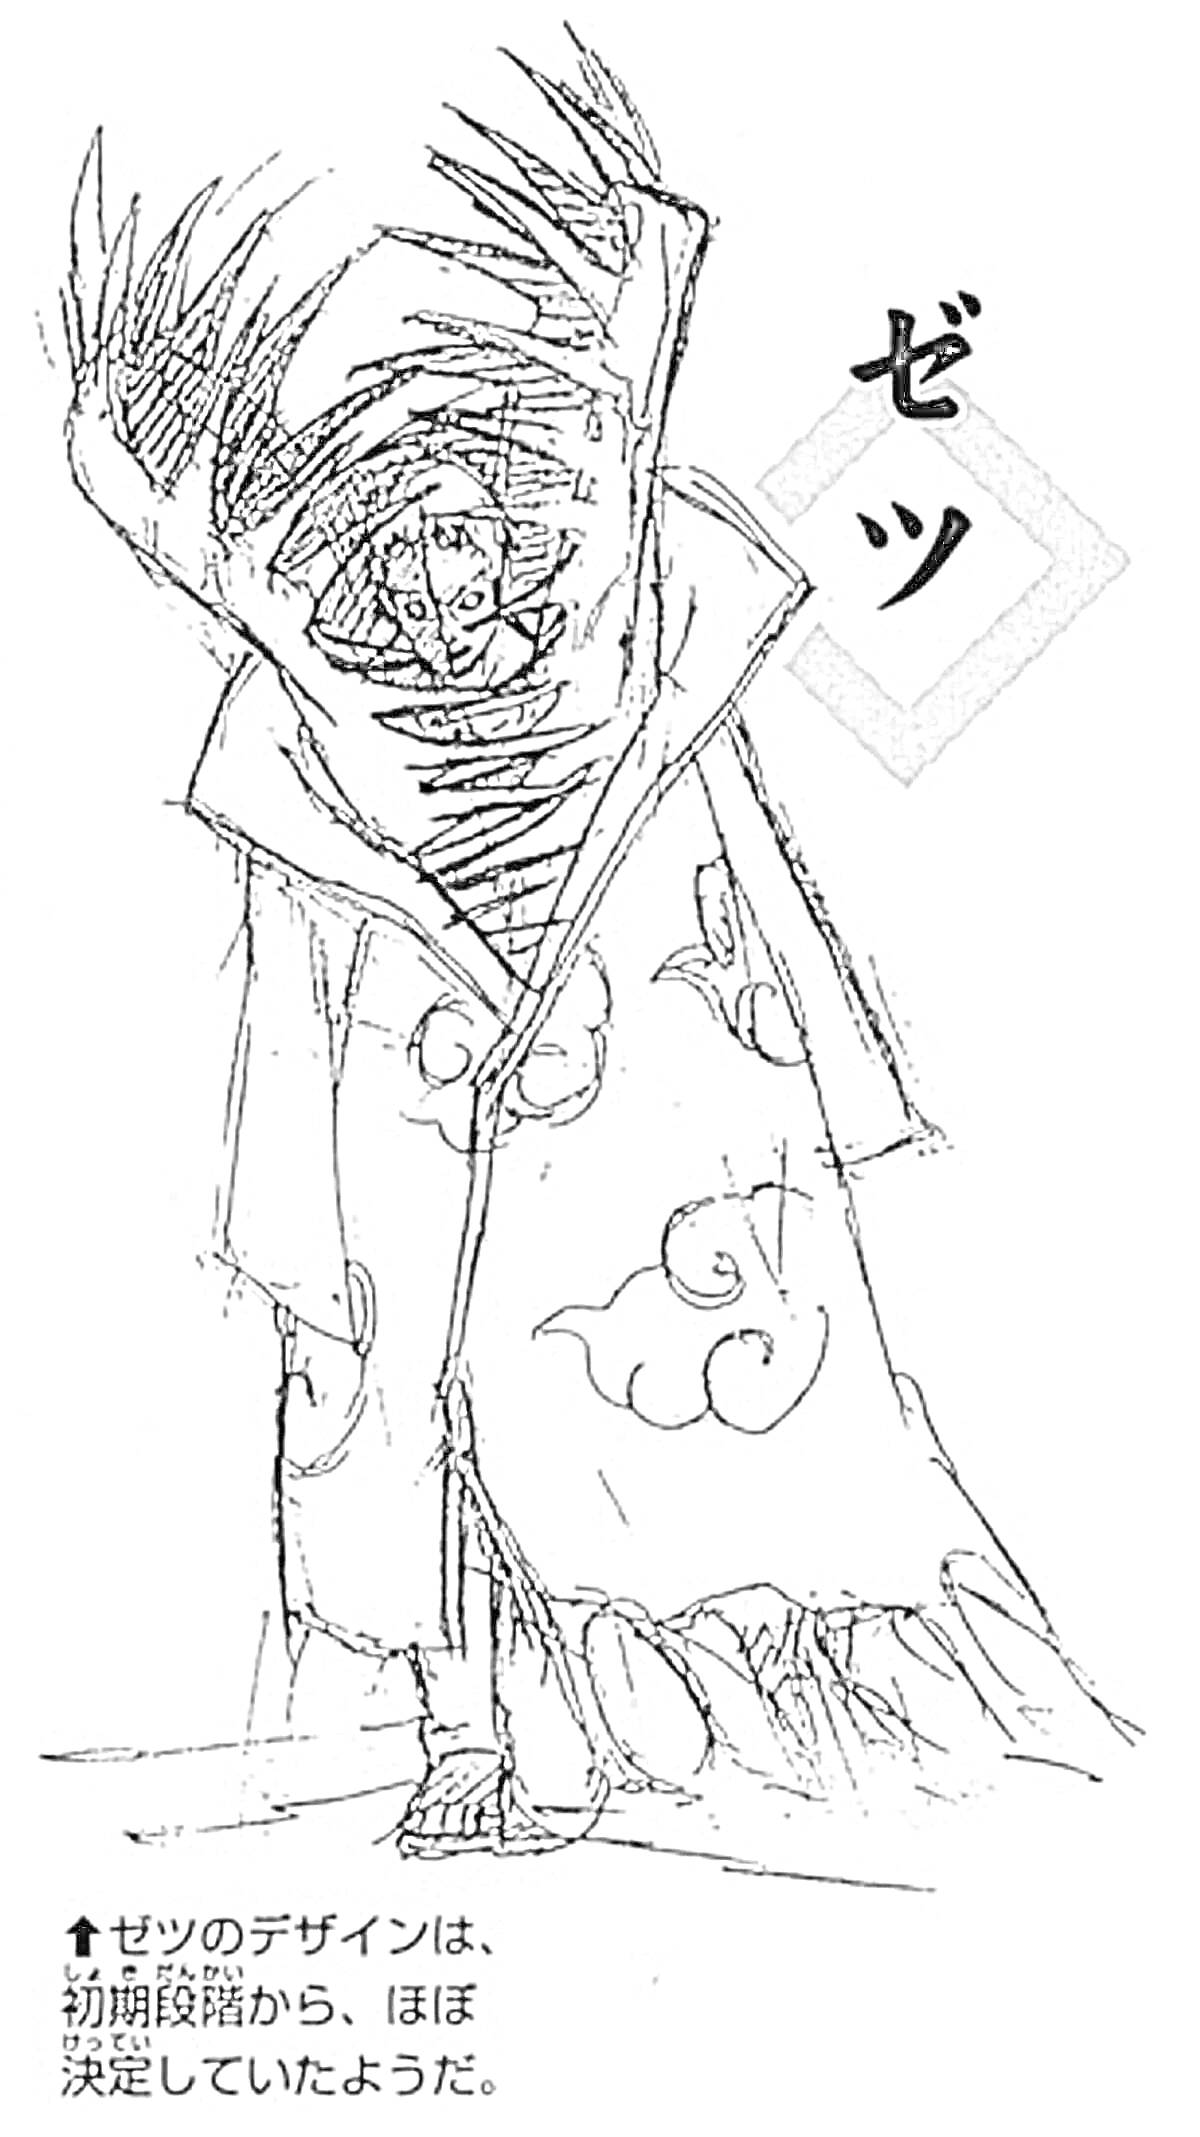 Раскраска Мужчина в длинном плаще с капюшоном, тёмными волосами и причудливыми рисунками